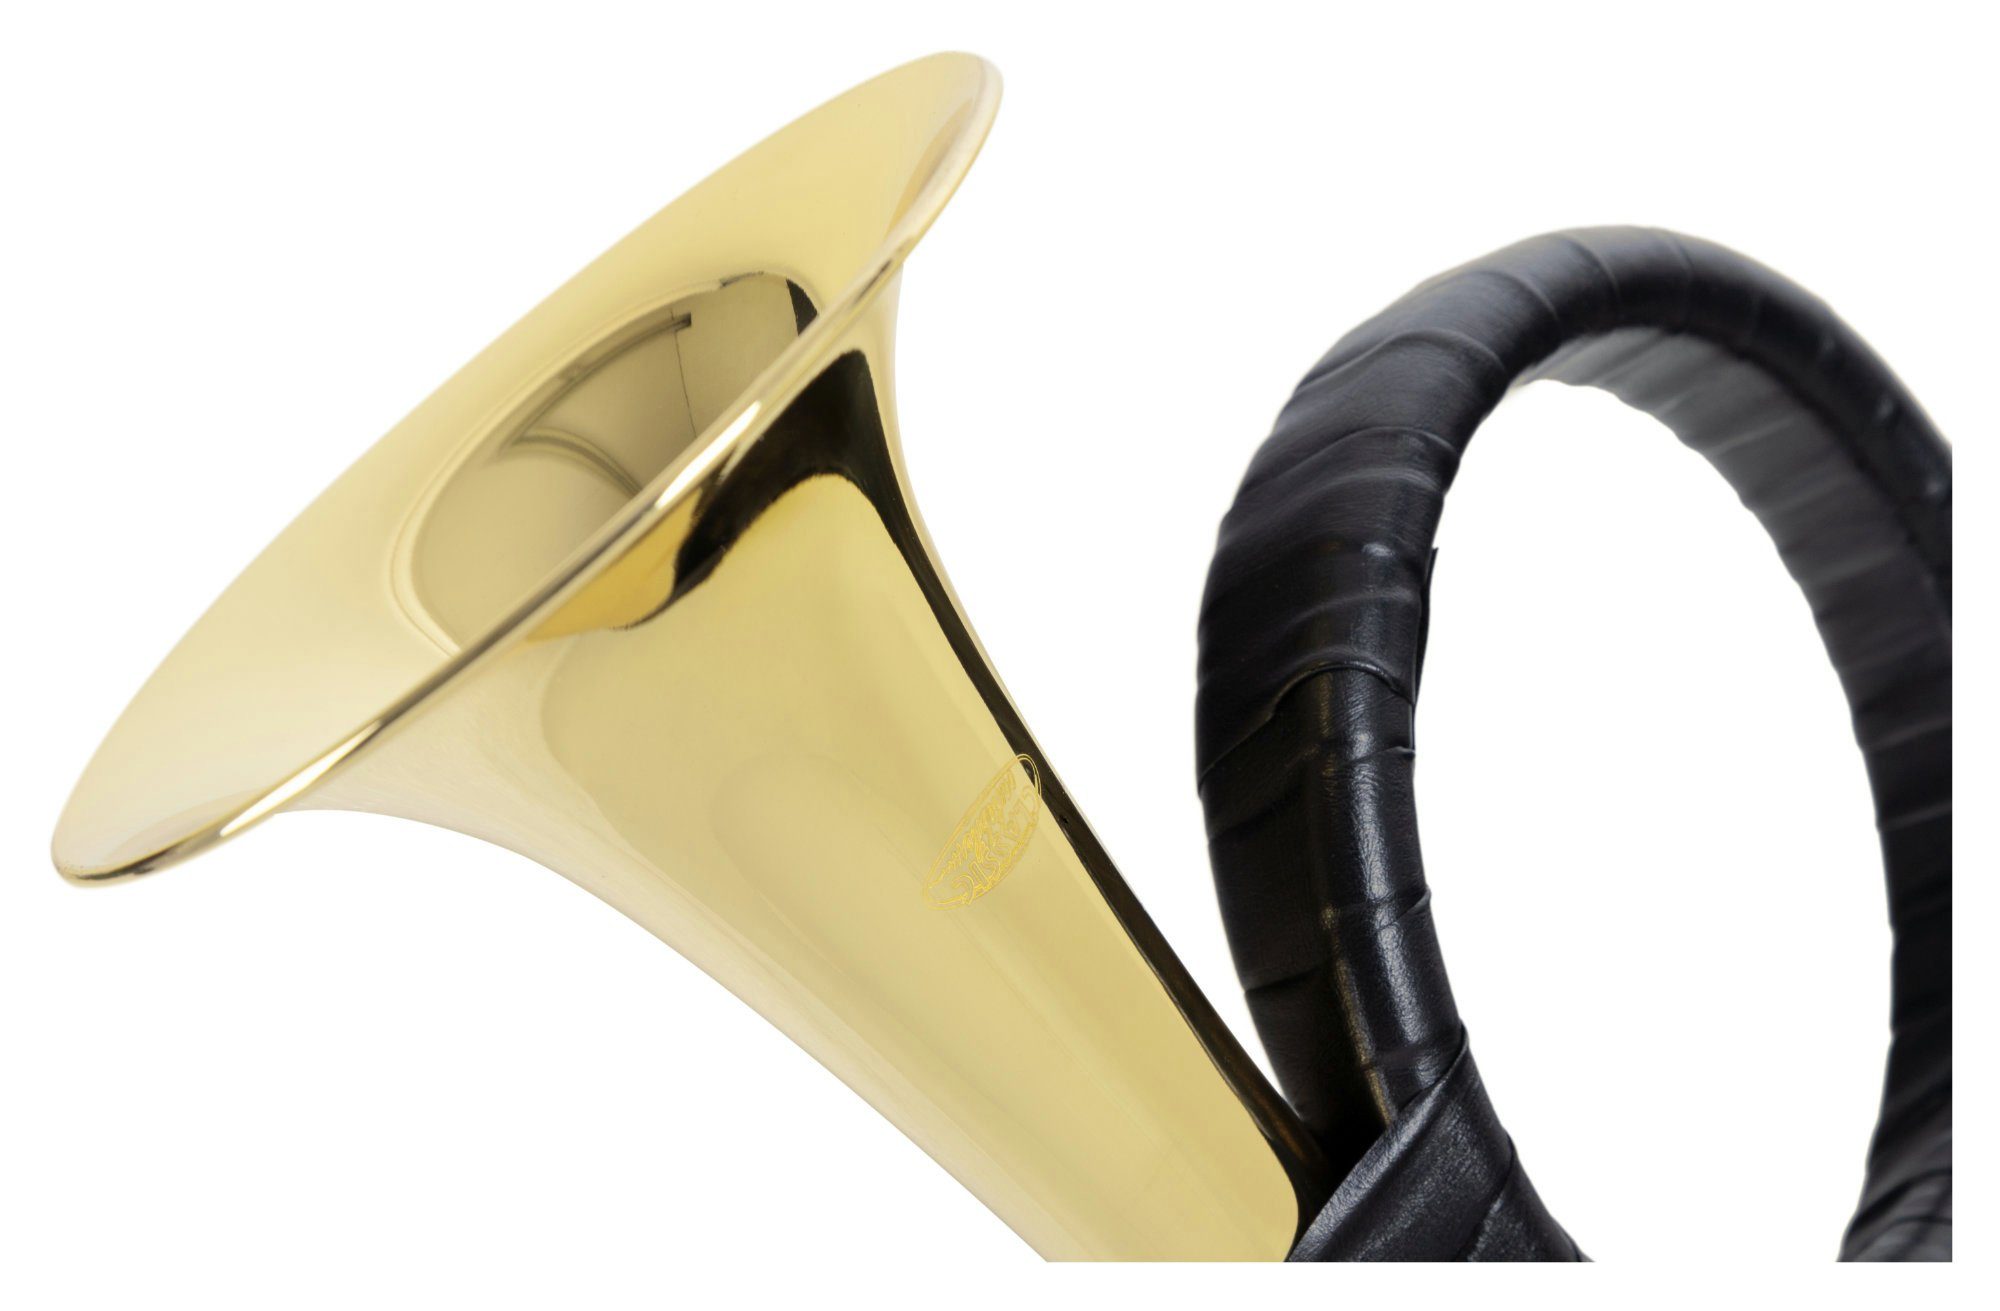 Classic Cantabile Signaltrompete Fürst Pless Horn, Jagdhorn in B-Stimmung,  Posthorn oder Signalhorn - mit Tasche, Mundstück und Reinigungstuch